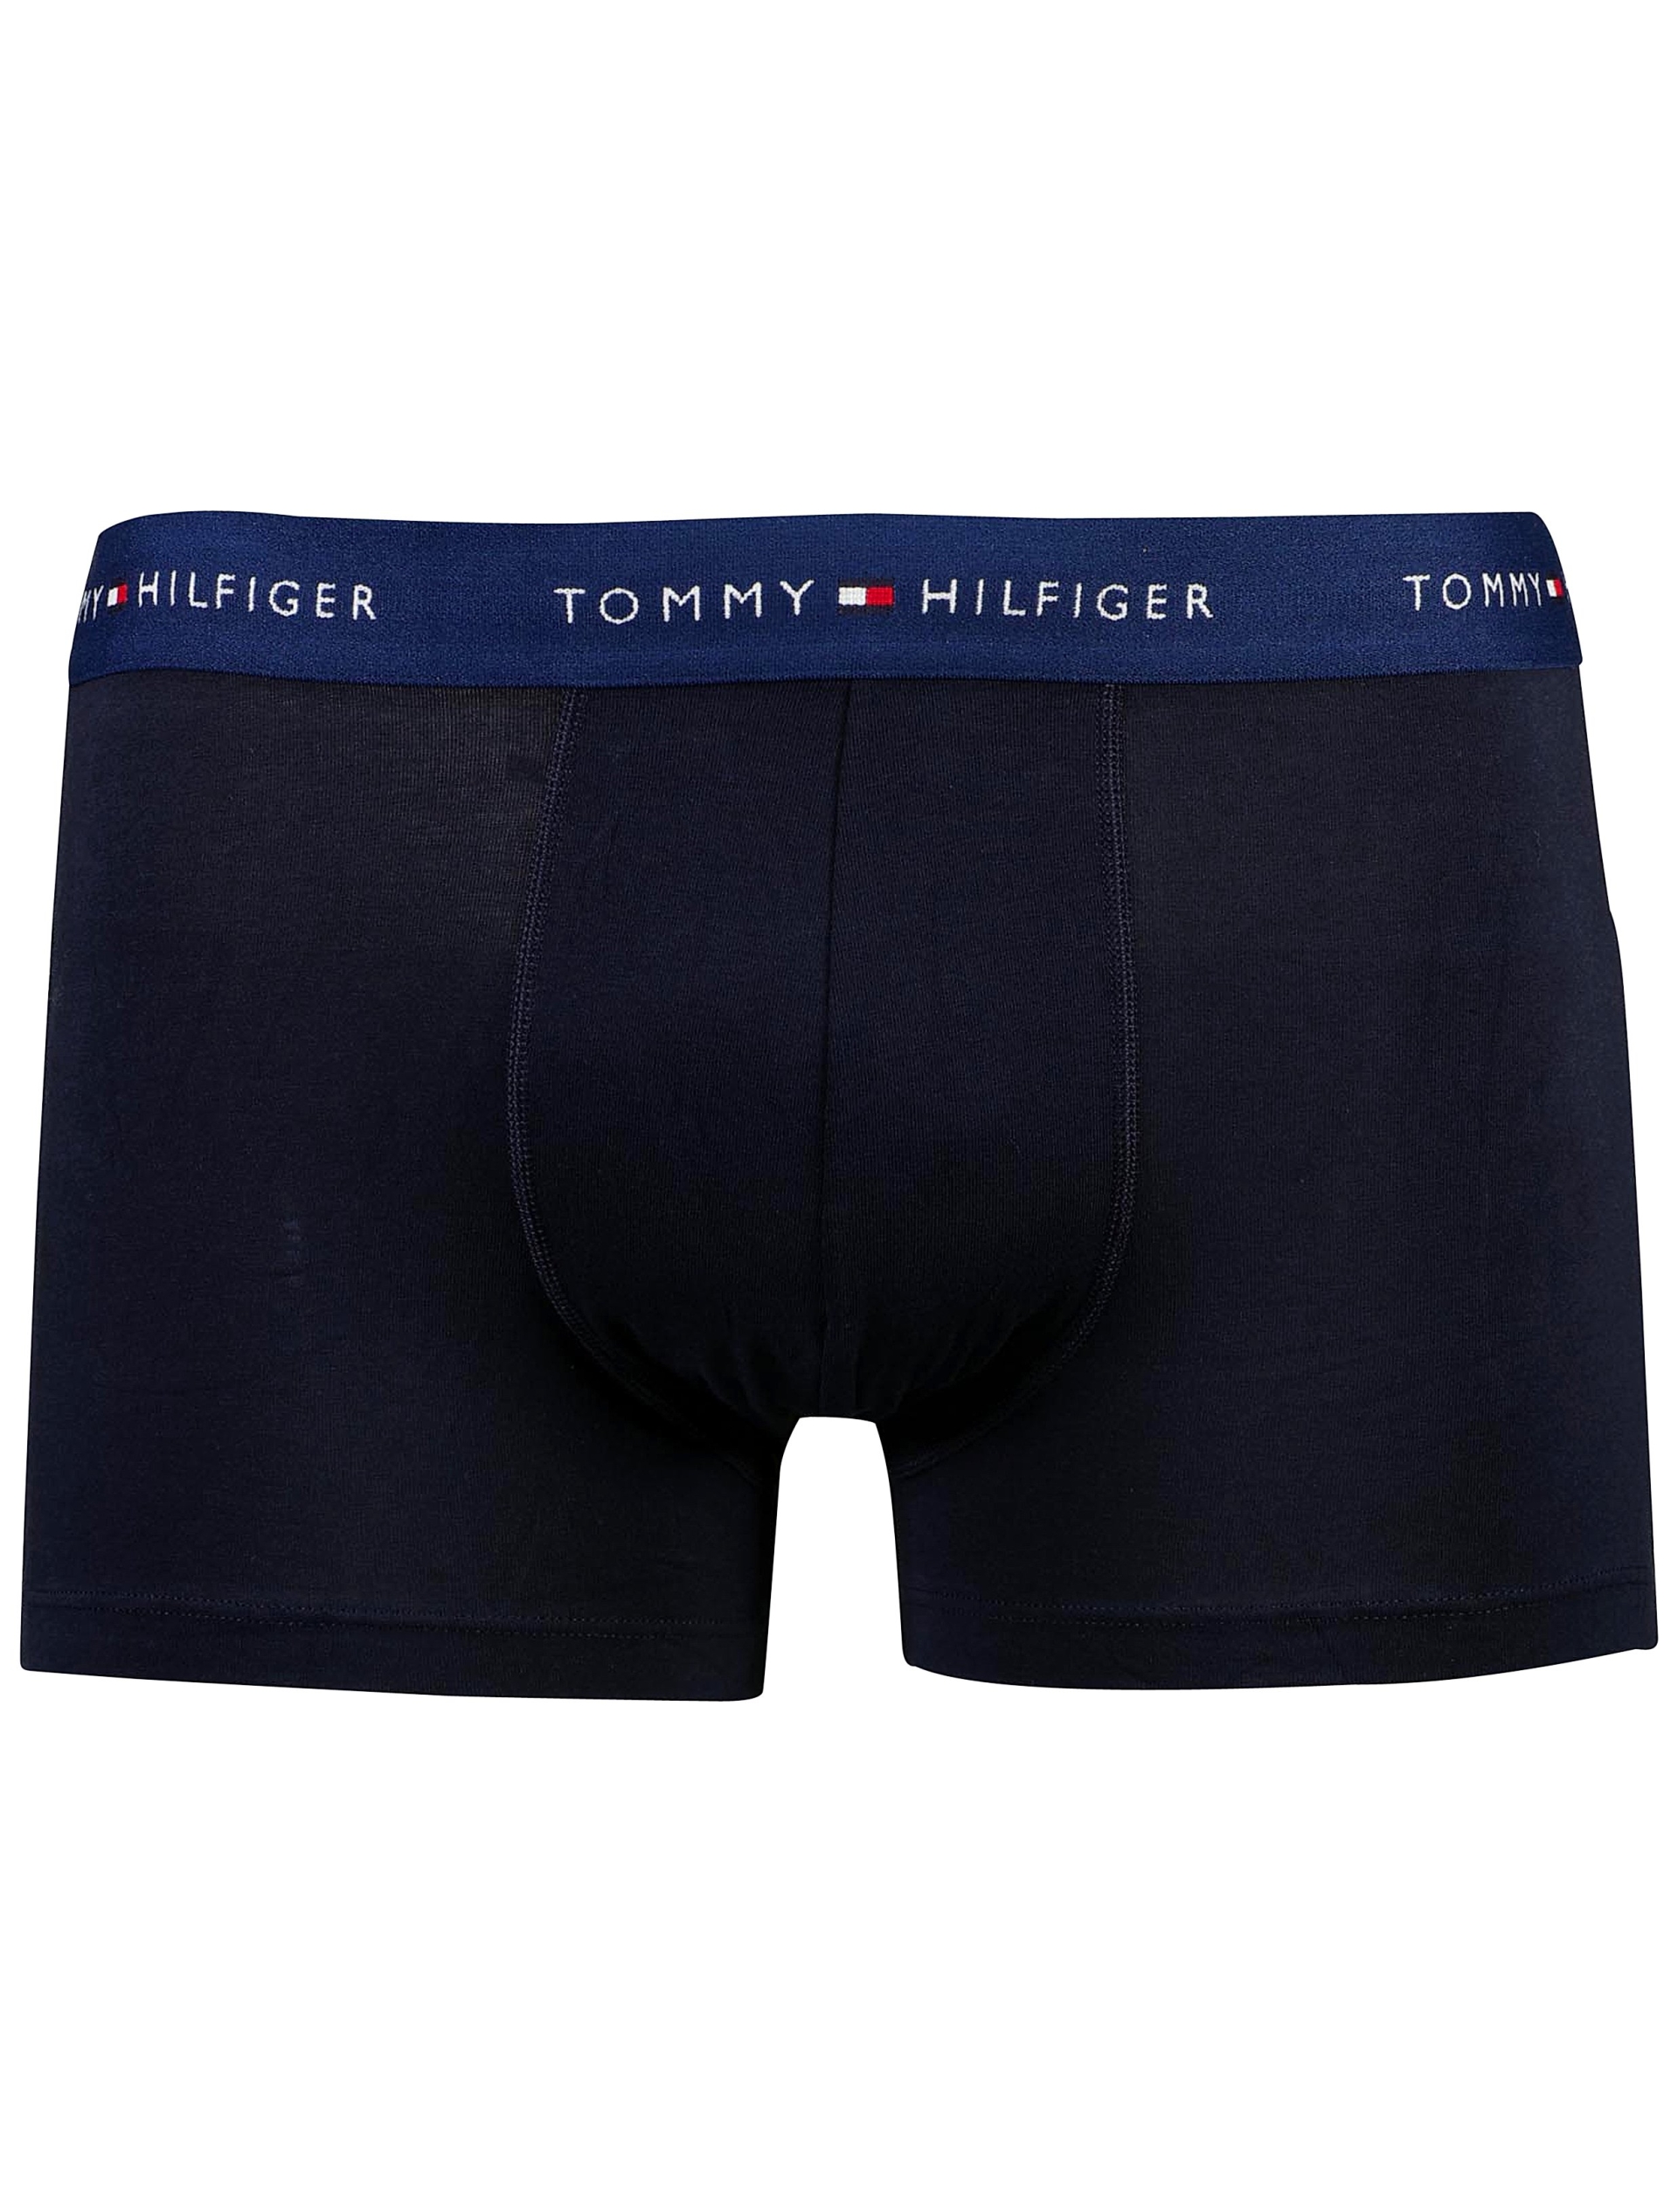 Tommy Hilfiger Tights blå / 0ts navy